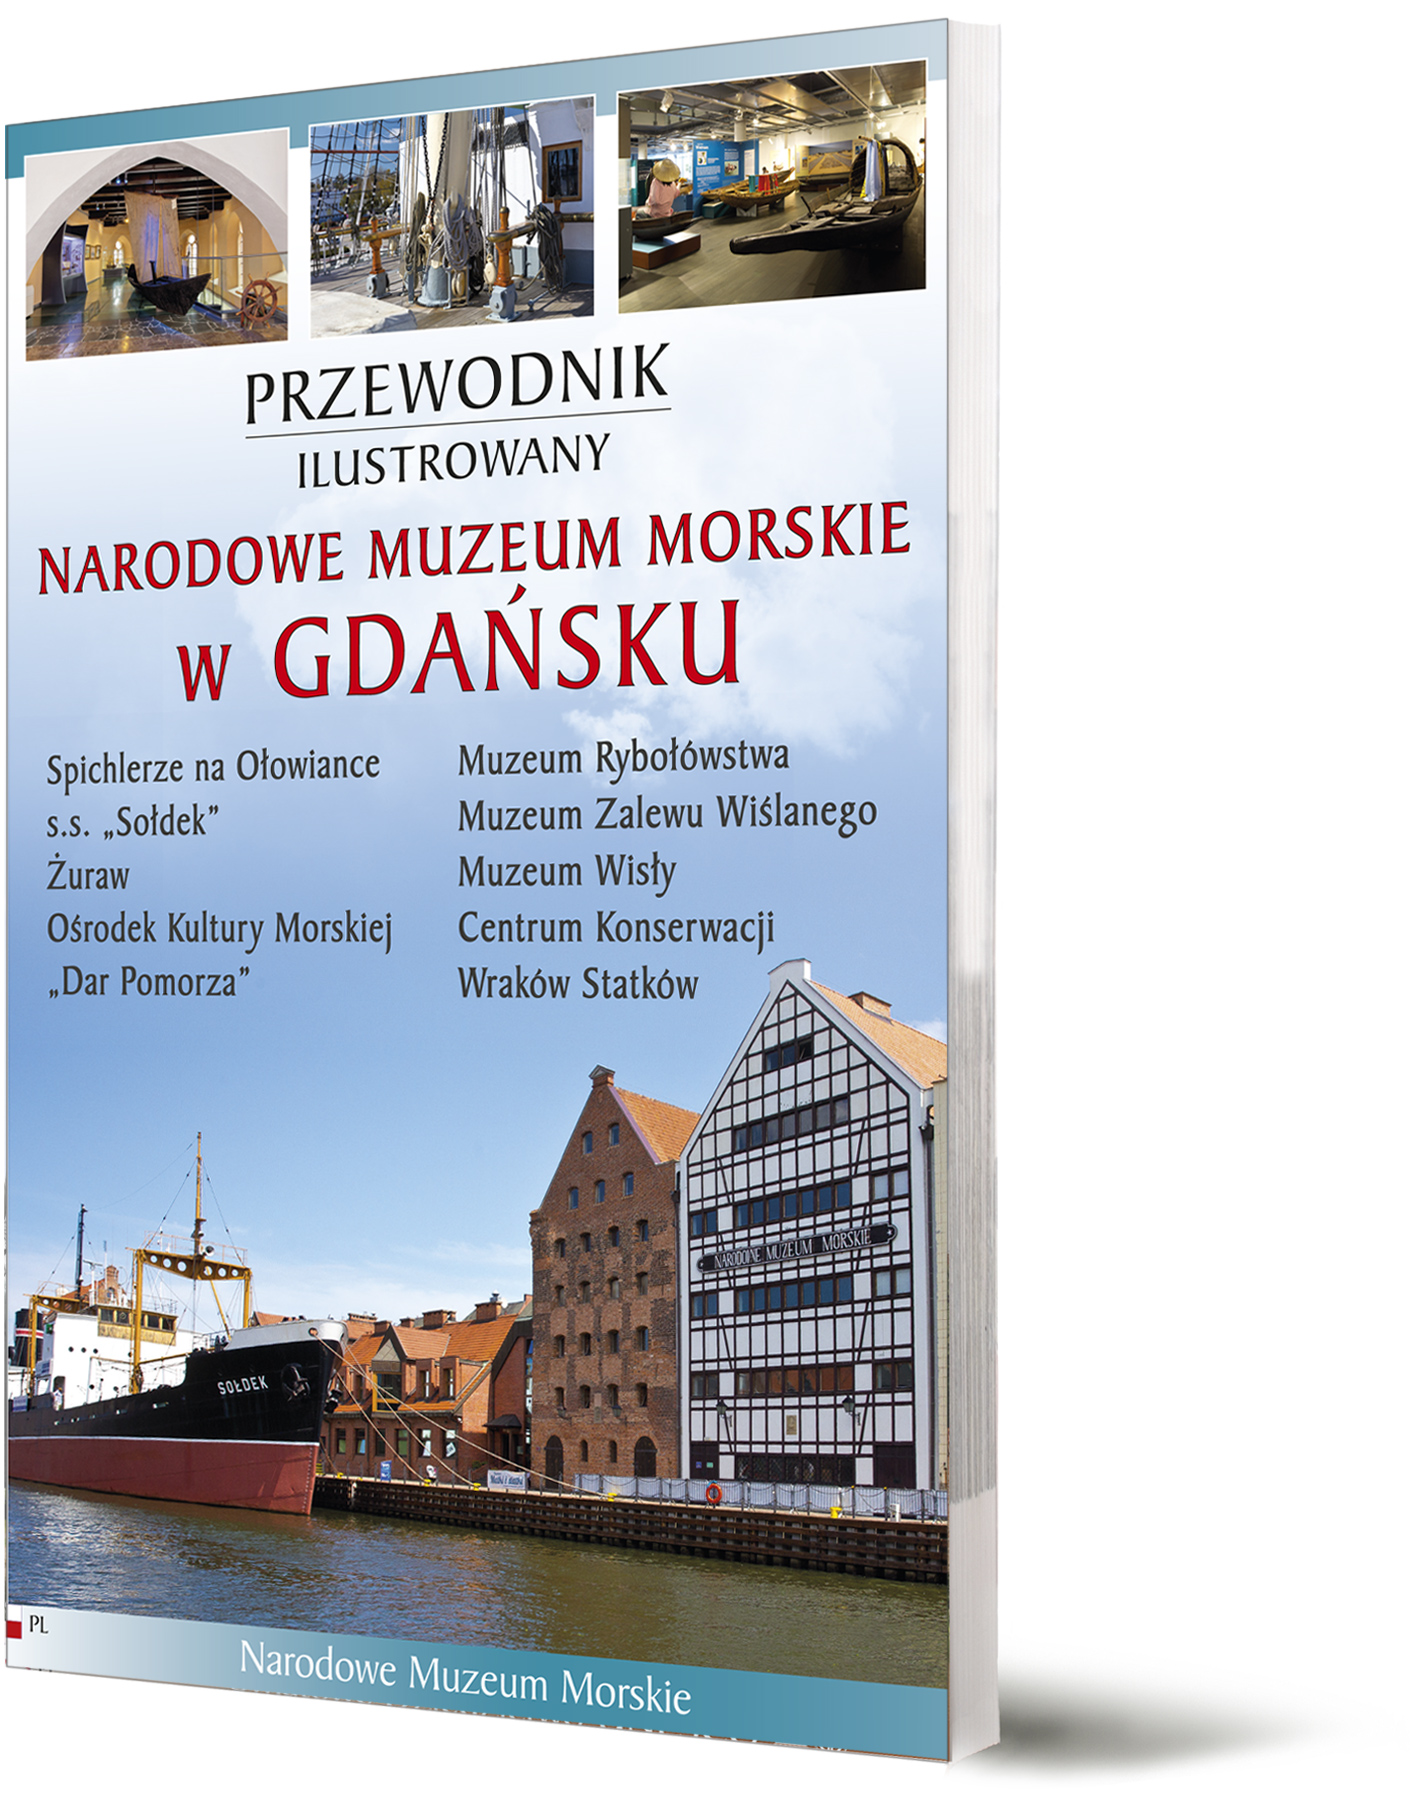 Gdańsk Narodowe Muzeum Morskie przewodnik